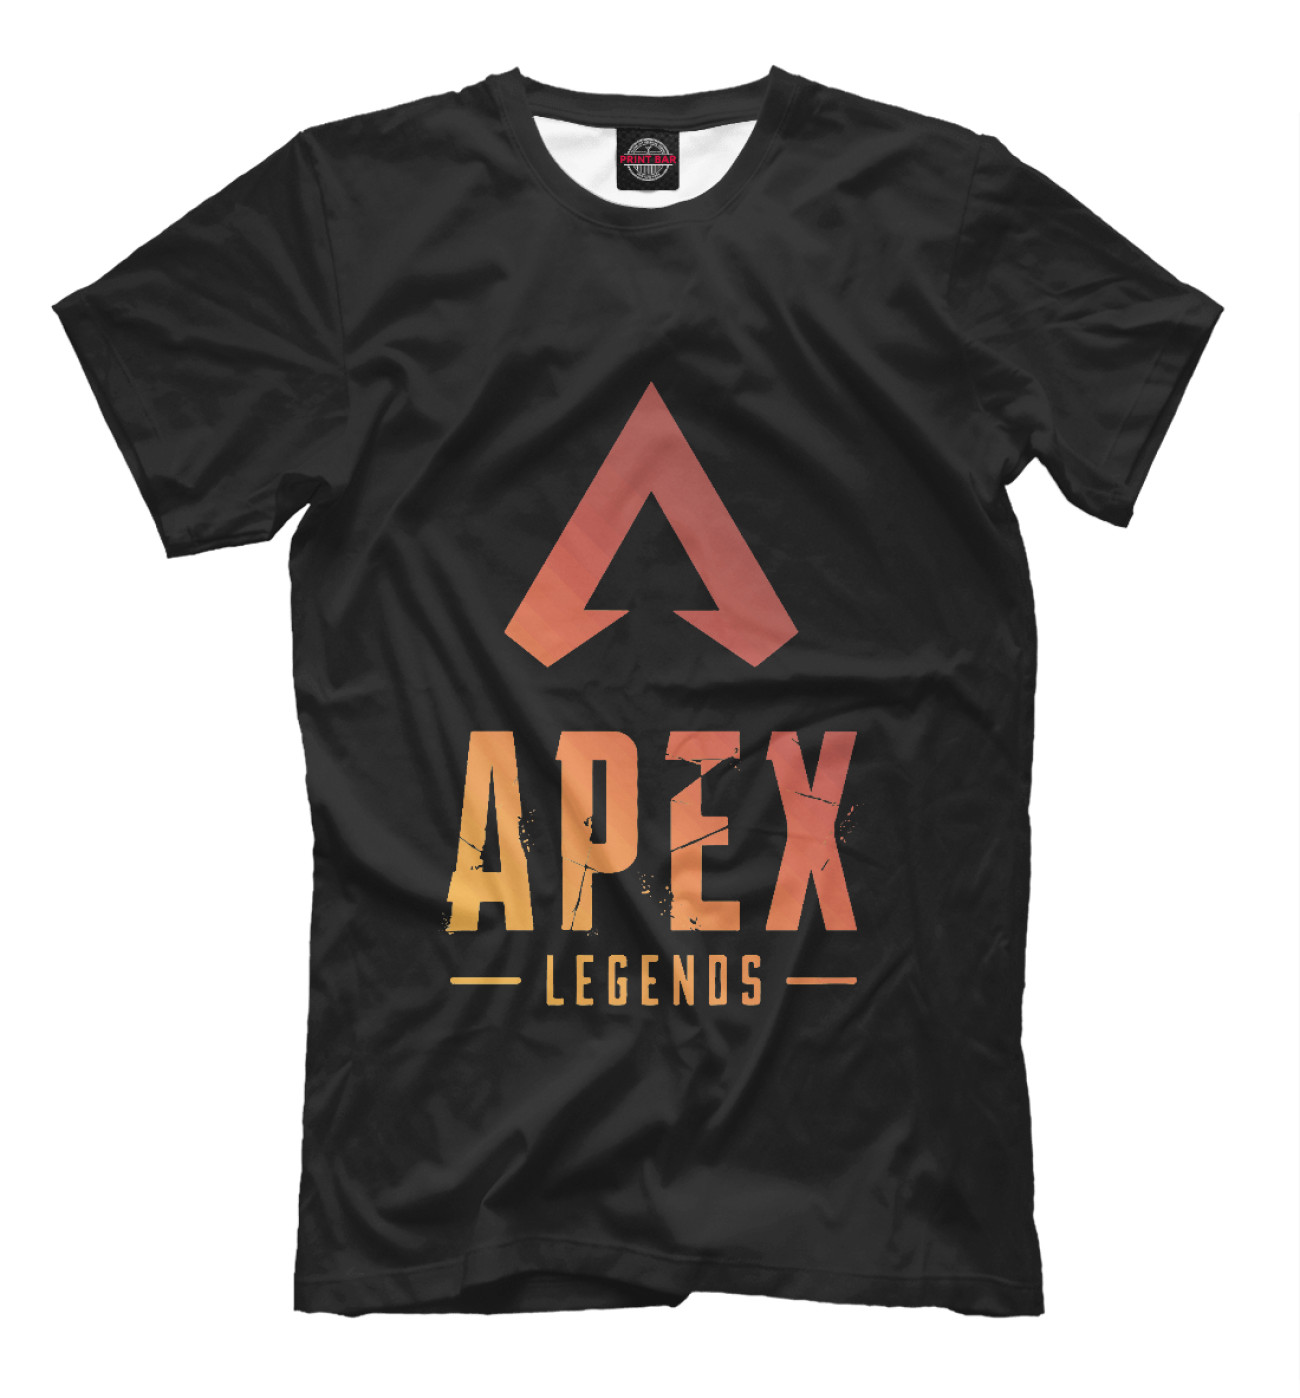 Мужская Футболка Apex Legends, артикул: APX-922372-fut-2